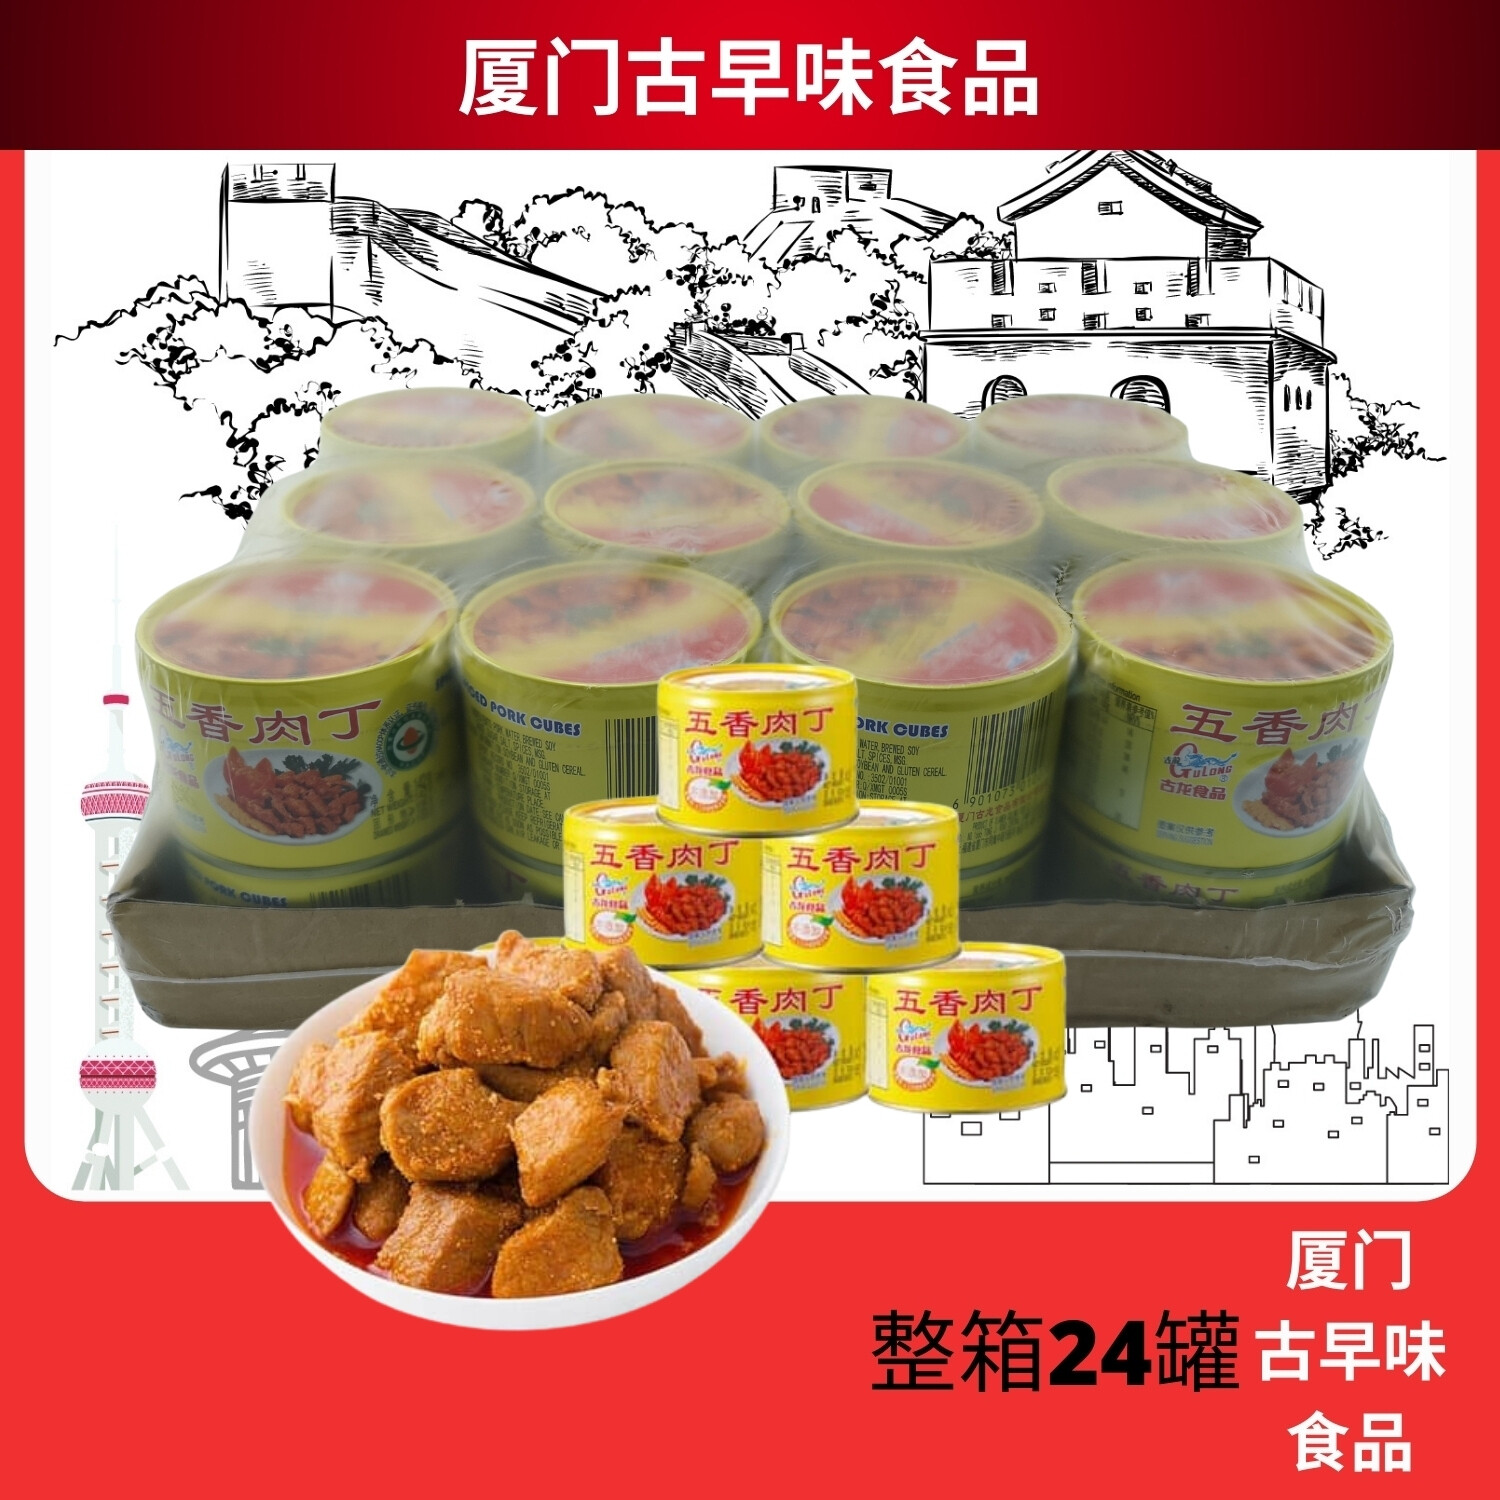 批发价） [ 整箱24罐] 五香肉丁Gulong 古龙五香肉丁Spiced Pork Cubes 142g x 24罐(马来西亚现货) | Lazada